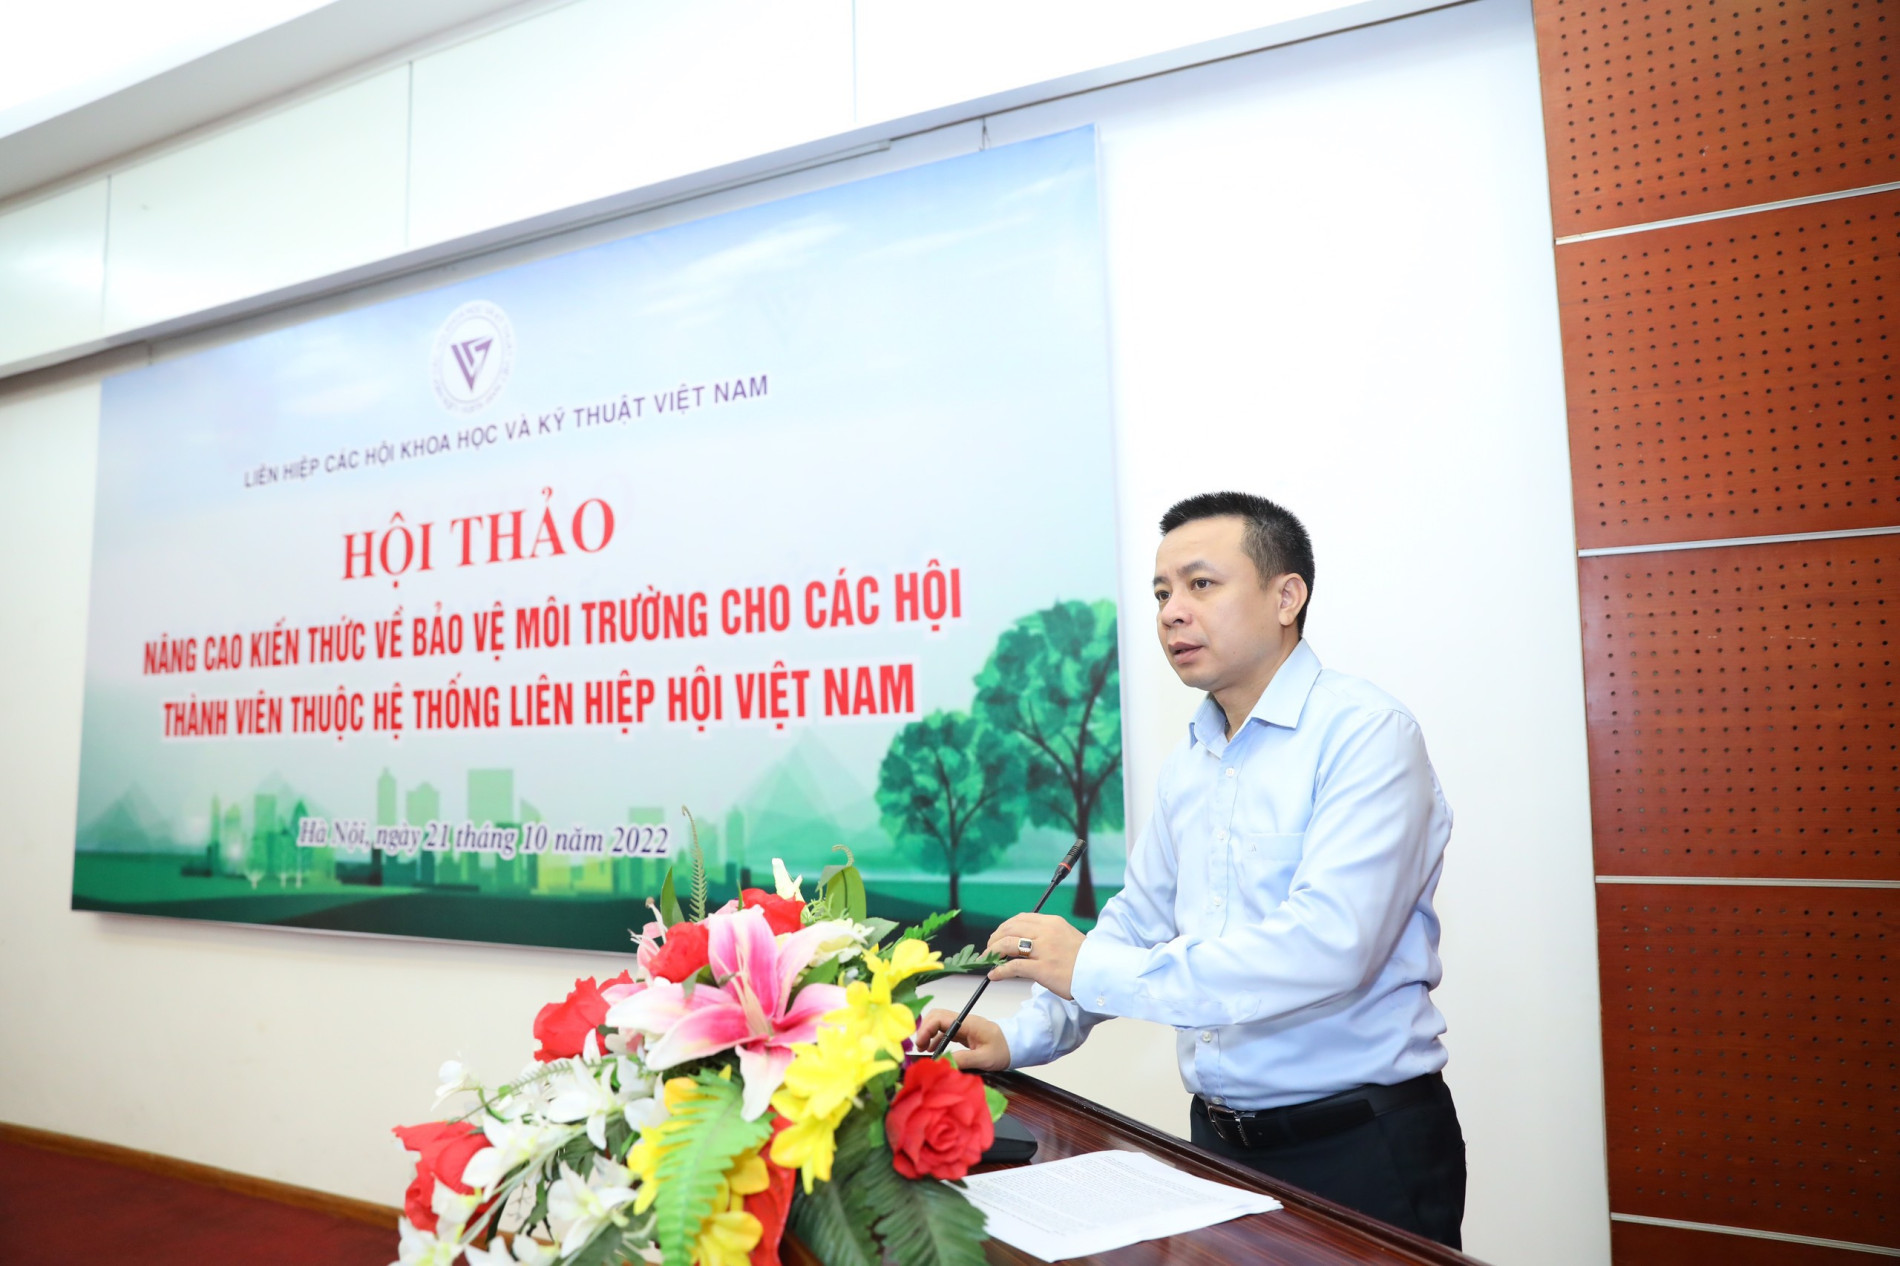 Trưởng ban Truyền thông và Phổ biến kiến thức Liên hiệp Hội Việt Nam Lê Thanh Tùng phát biểu tại hội thảo